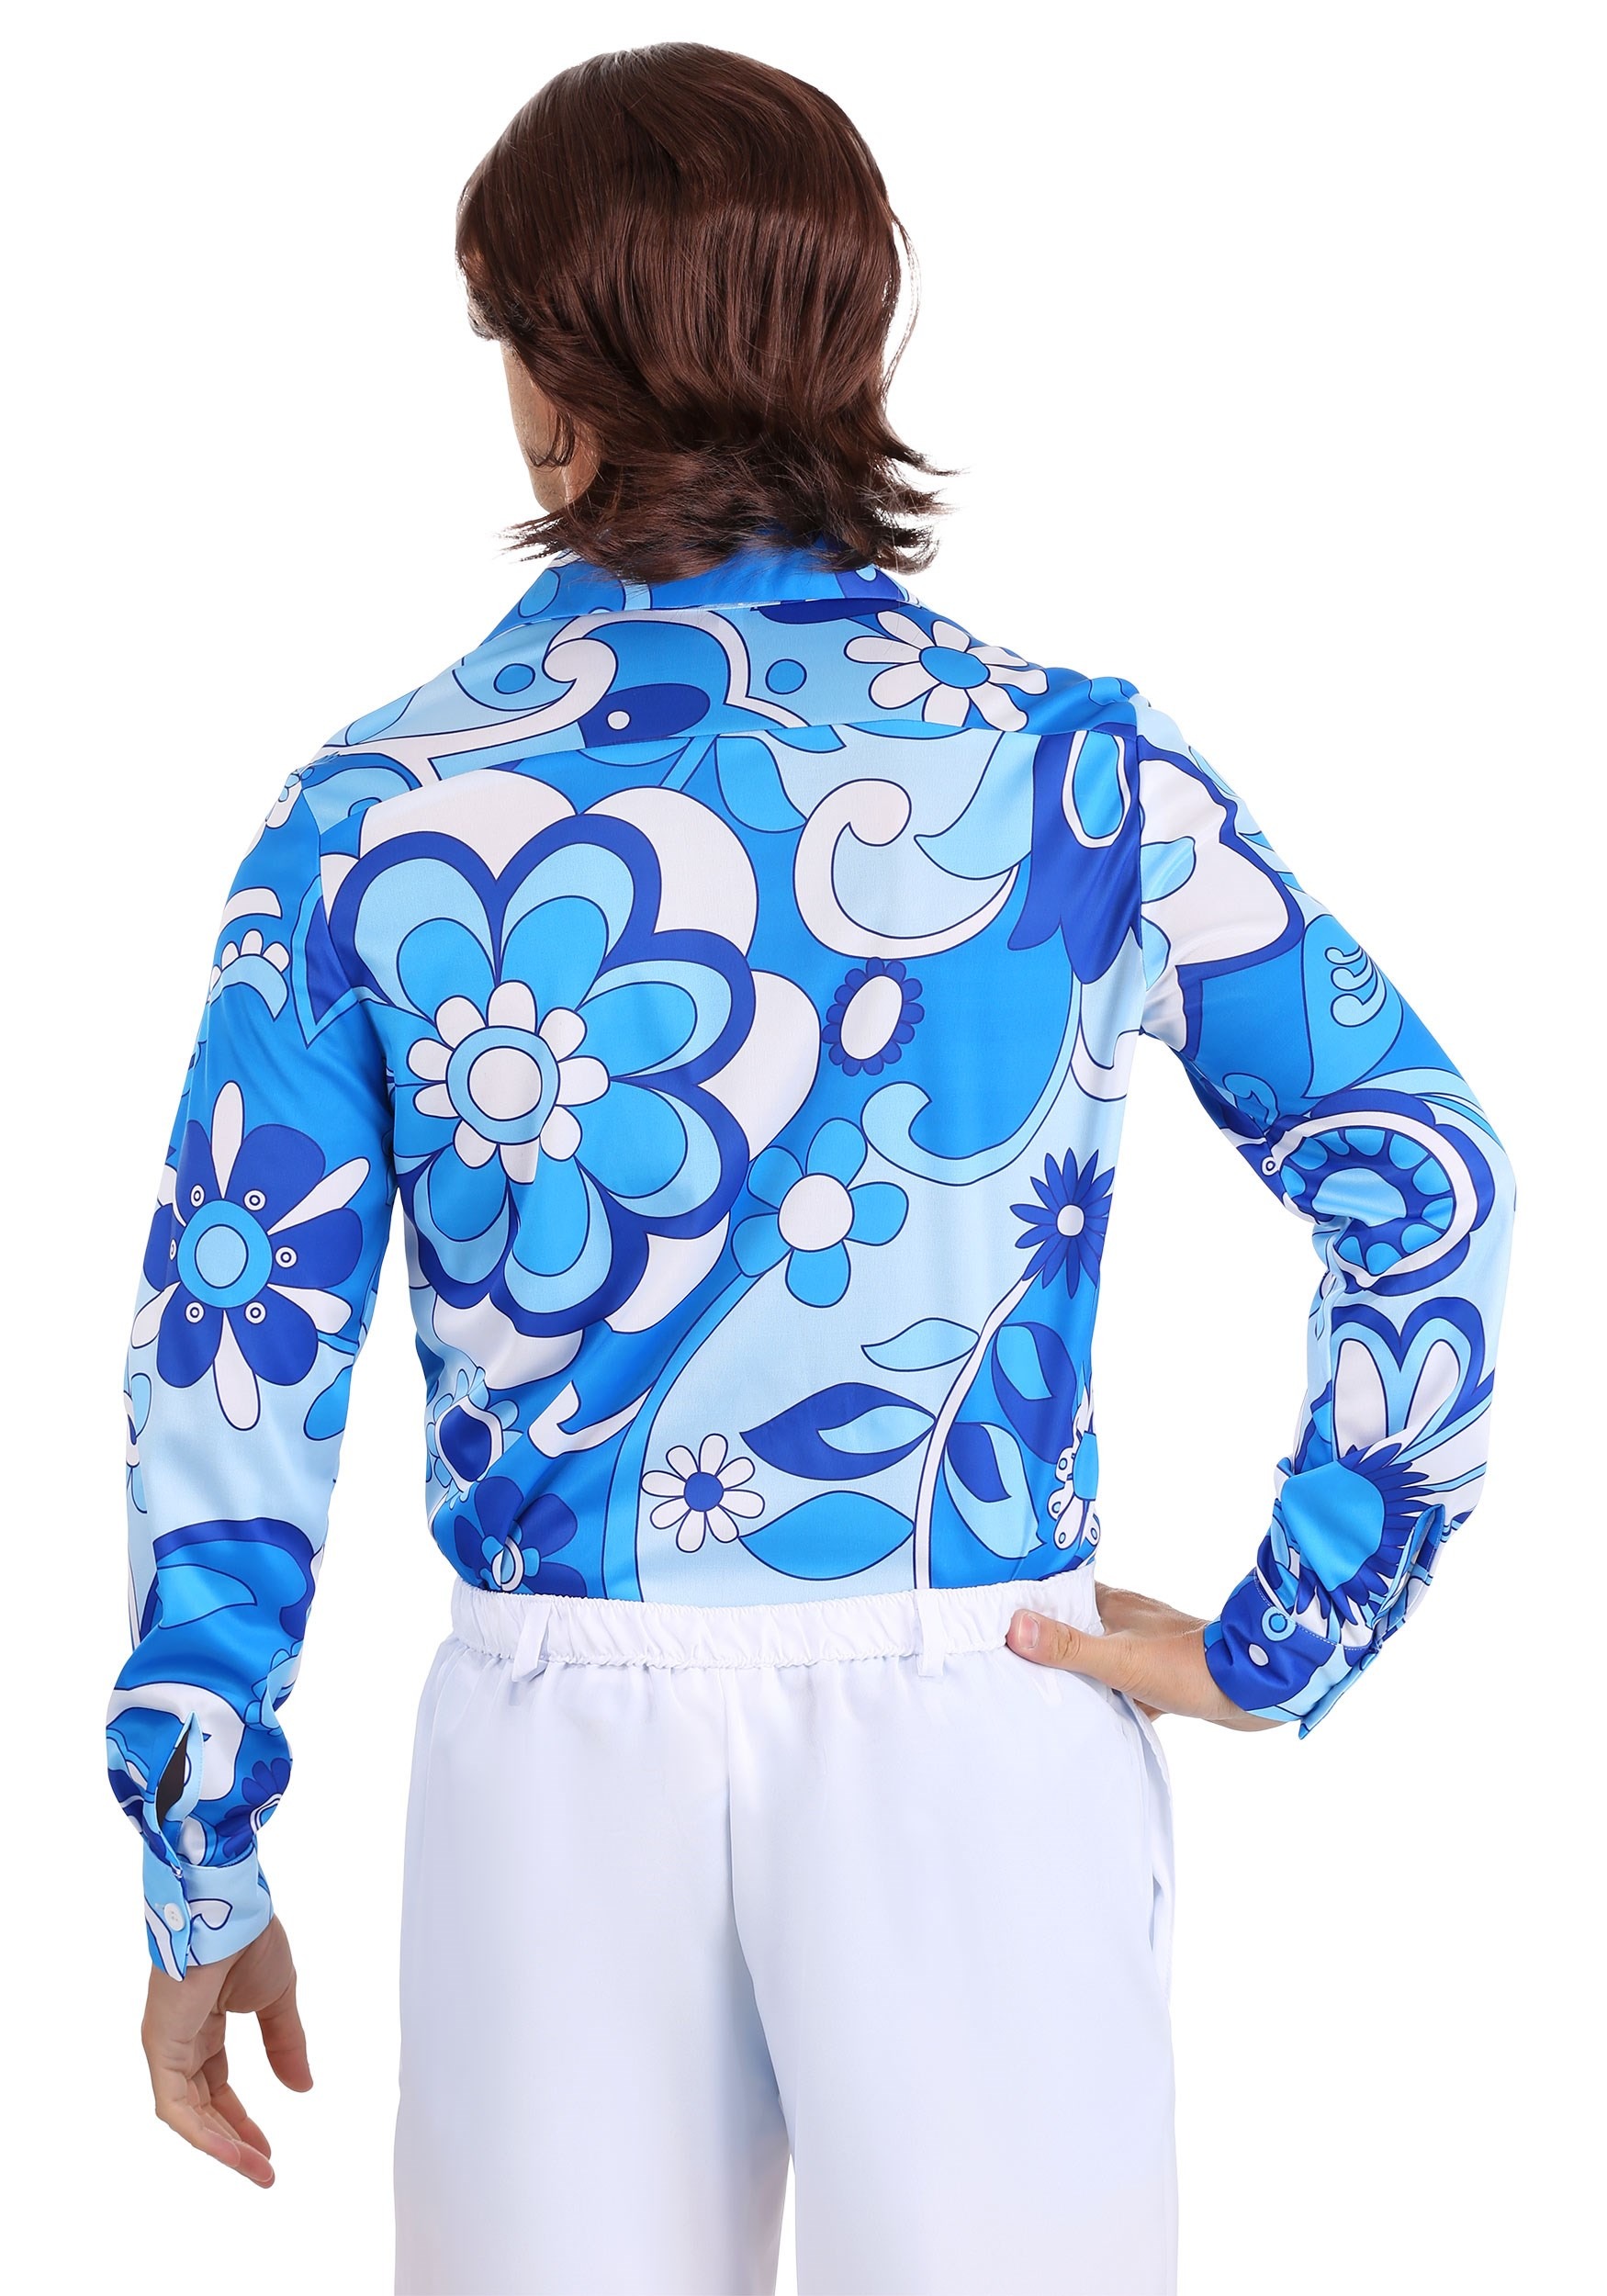 Blue Flower Disco Shirt For Men